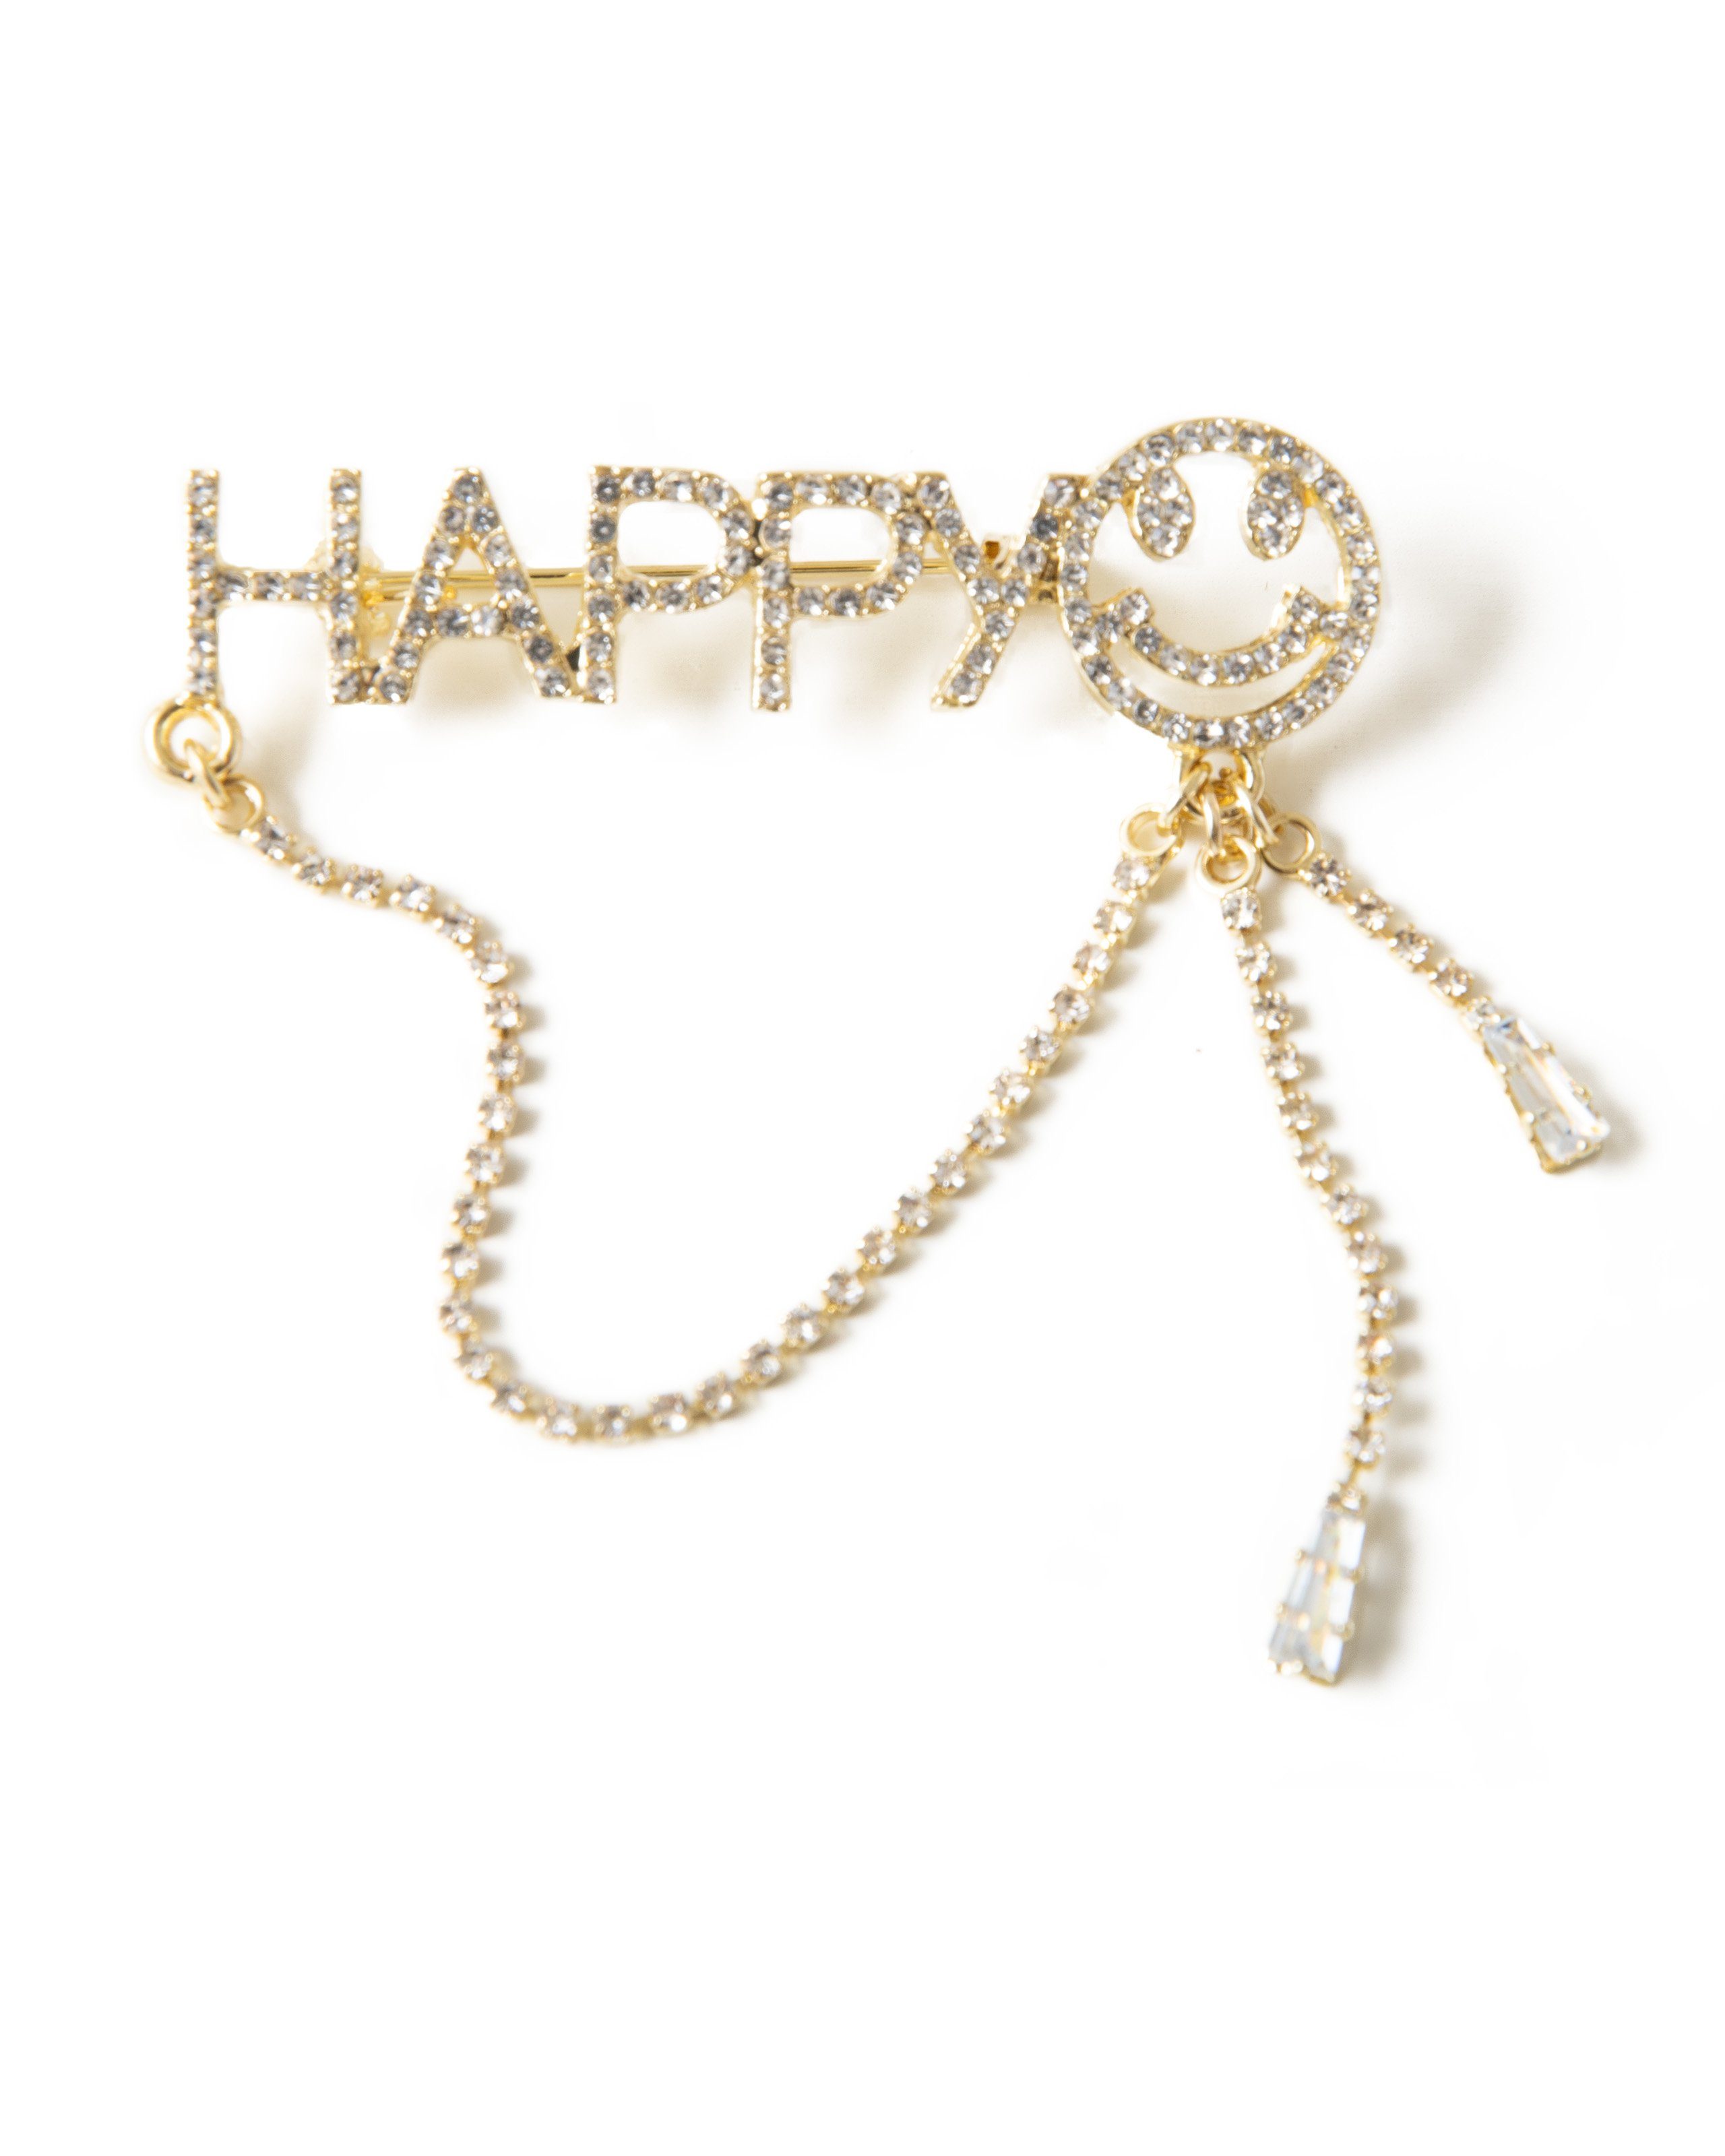 MayTree Brosche MayTree Brosche "HAPPY", mit Strass-Stein Kette (inkl.Etui), Metallbrosche in Buchstaben HAPPY mit einem Smiley und Kette